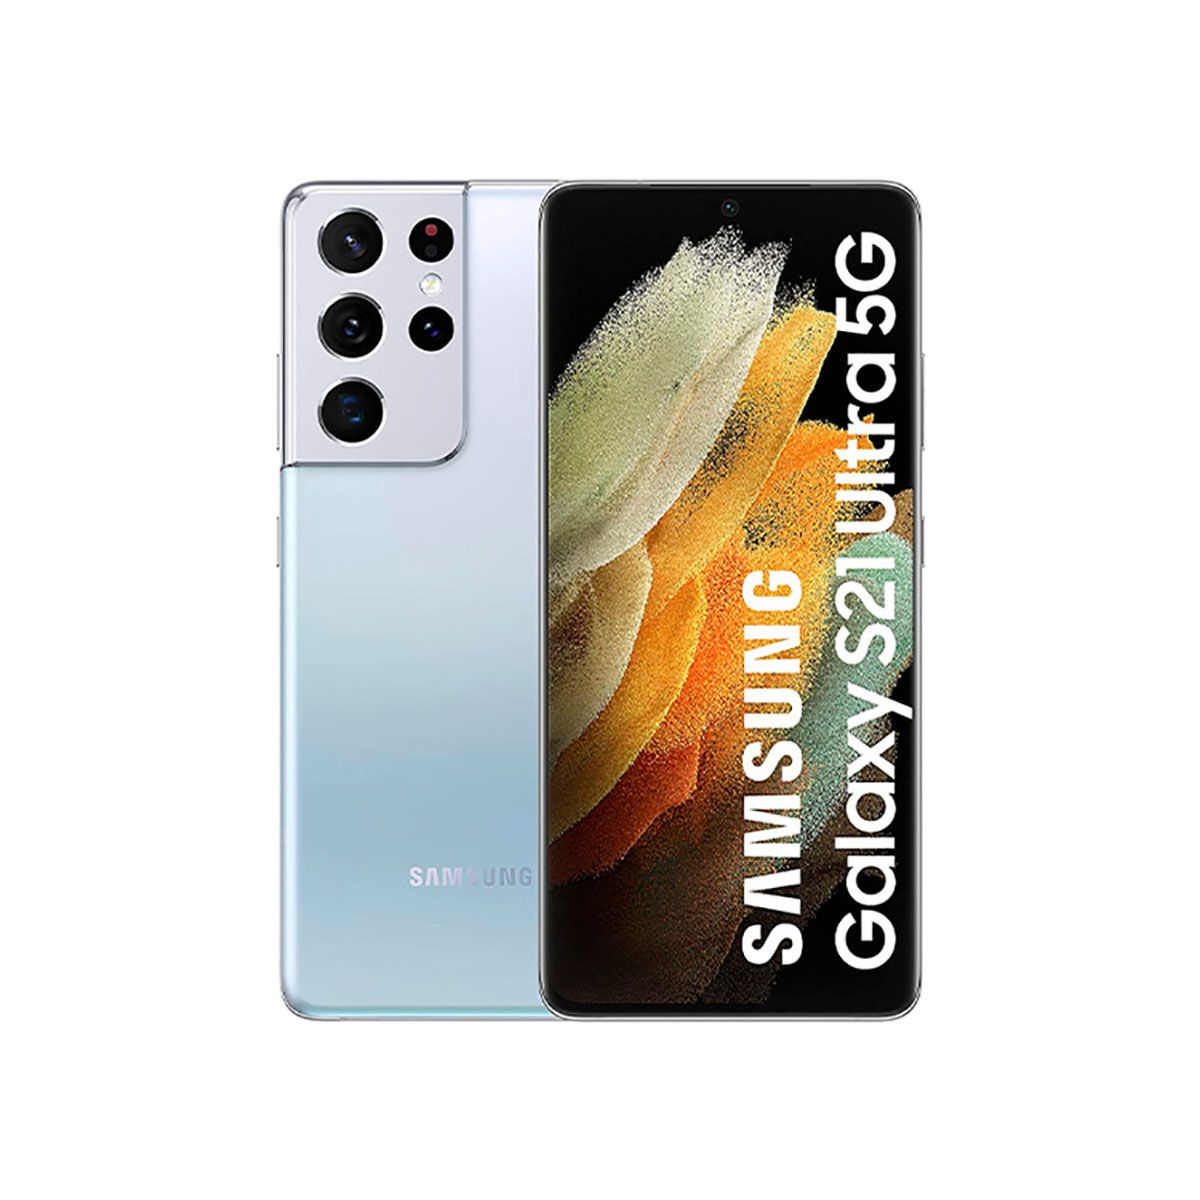 Samsung Galaxy S21 Ultra 5G 12GB/128GB Silver (Phantom Silver) Dual SIM G998